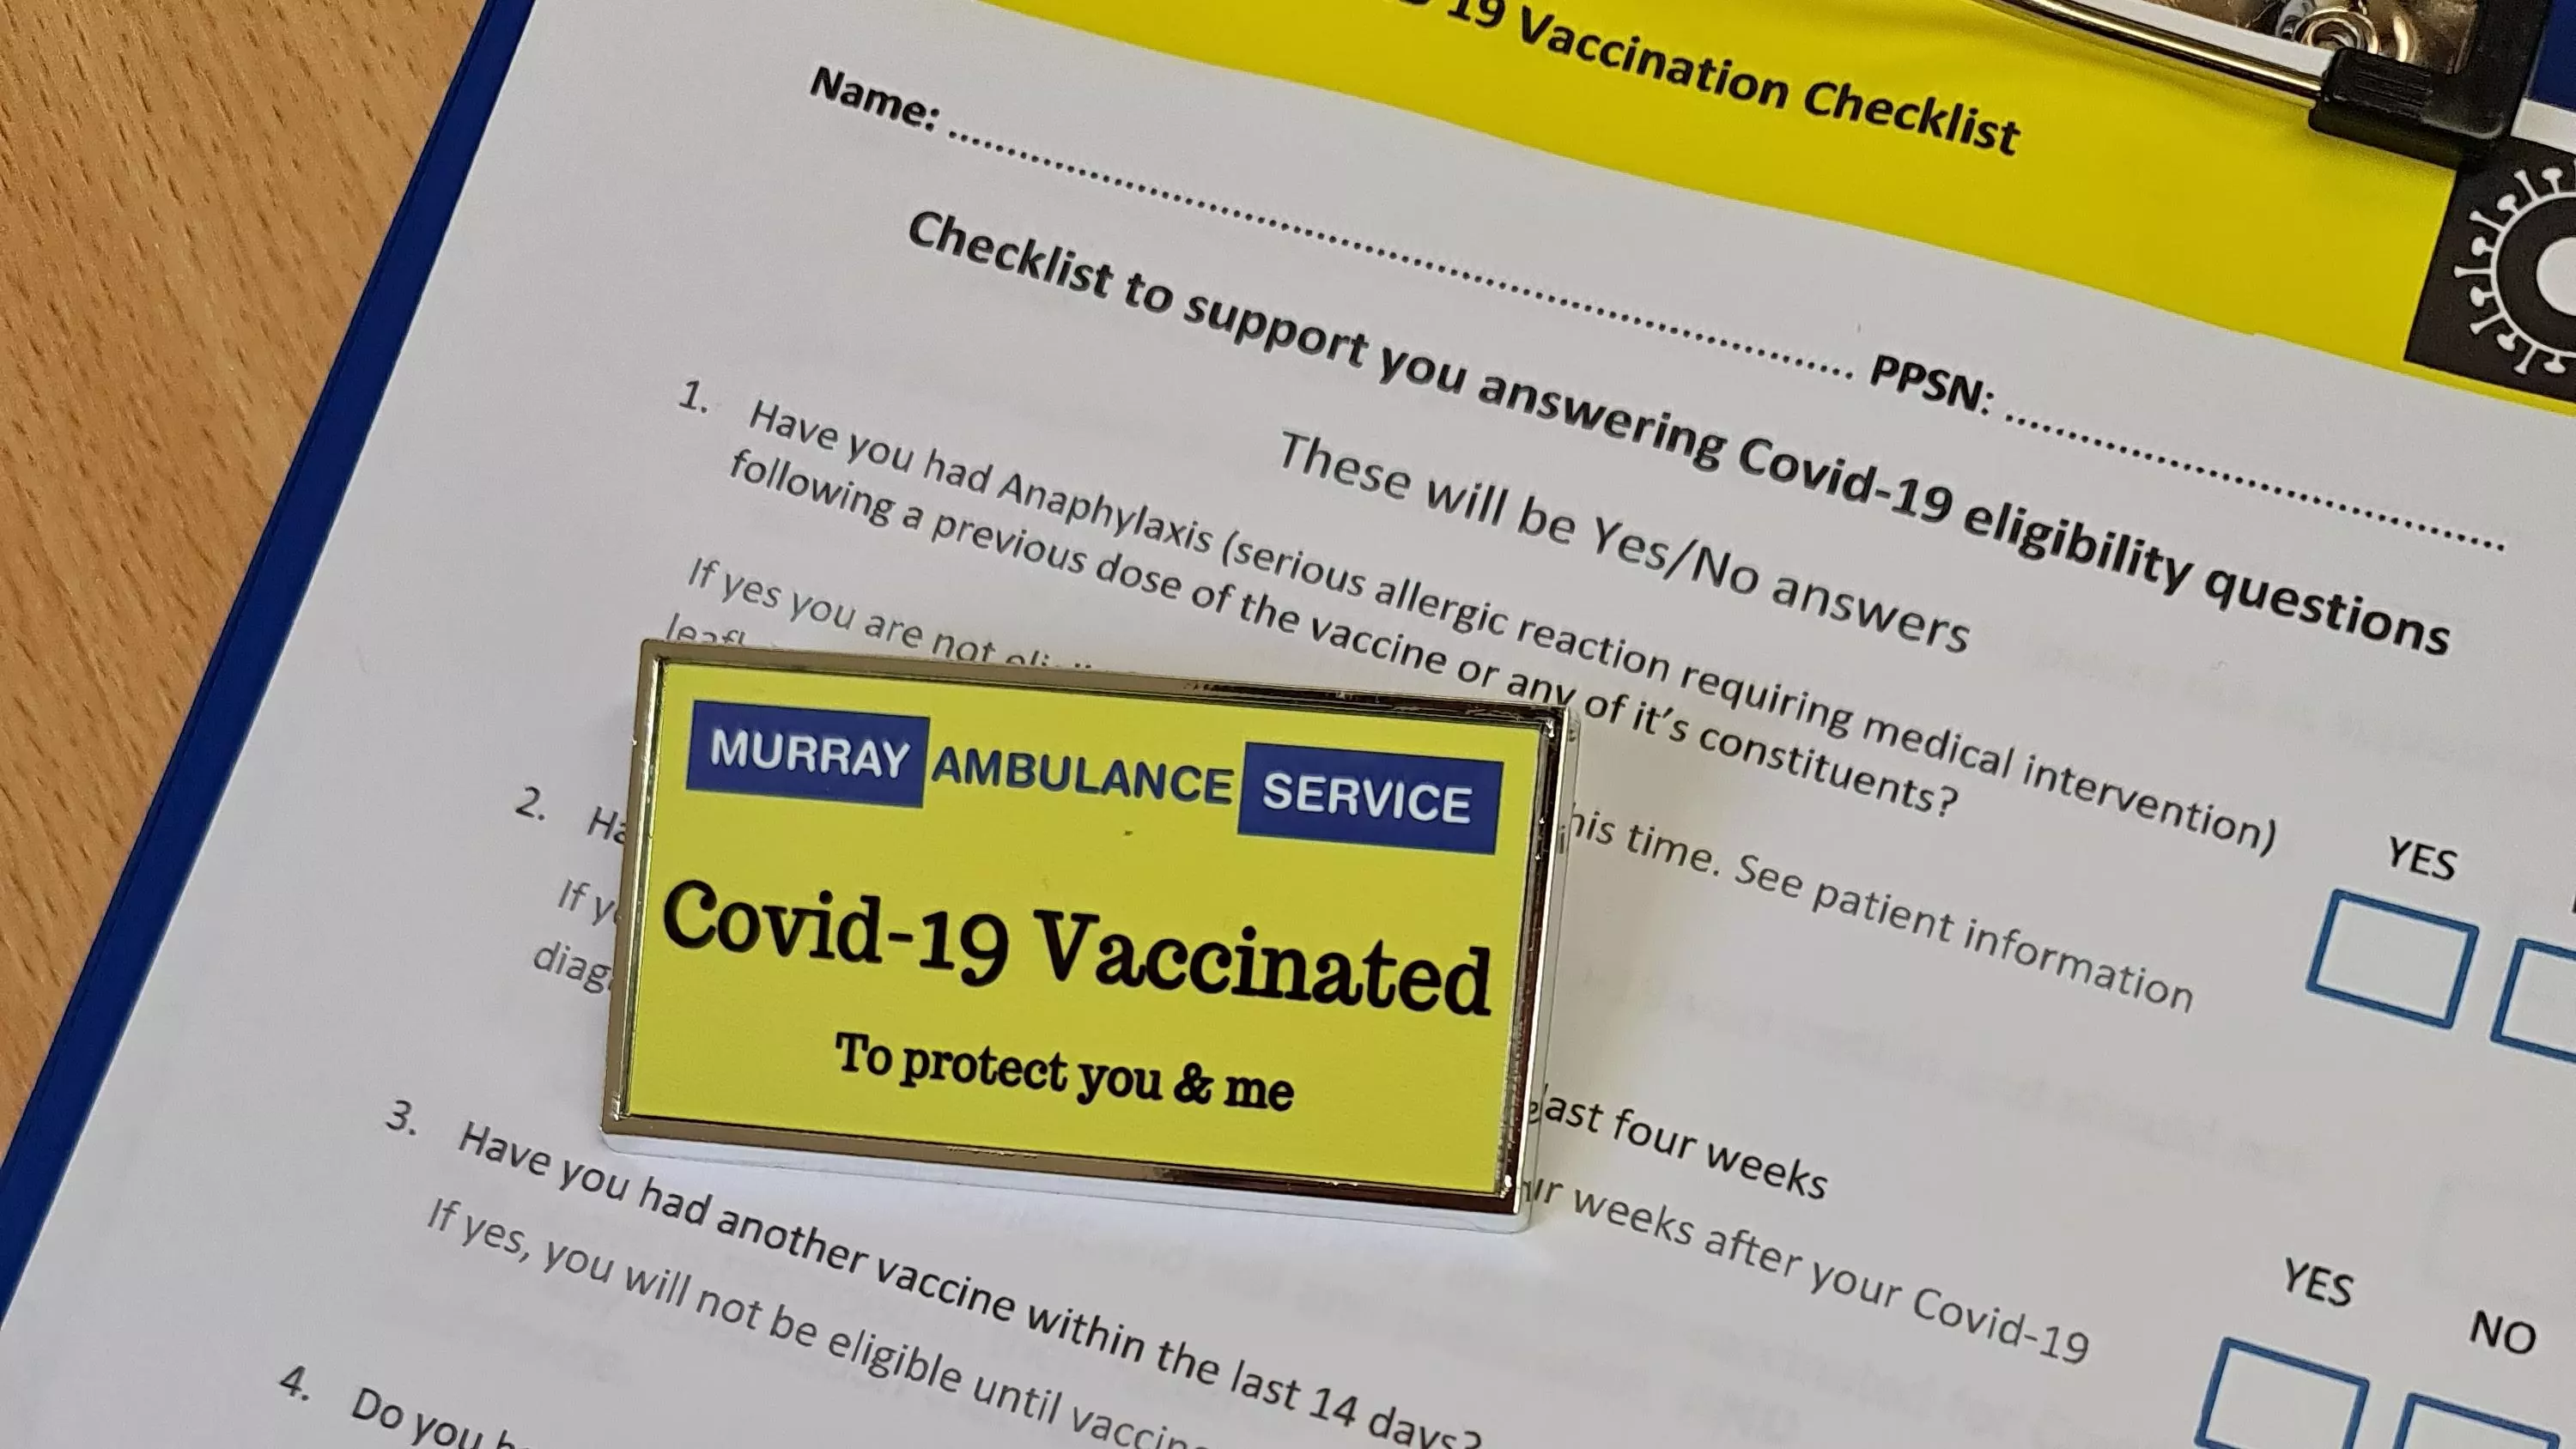 Covid-19 Vaccination Checklist